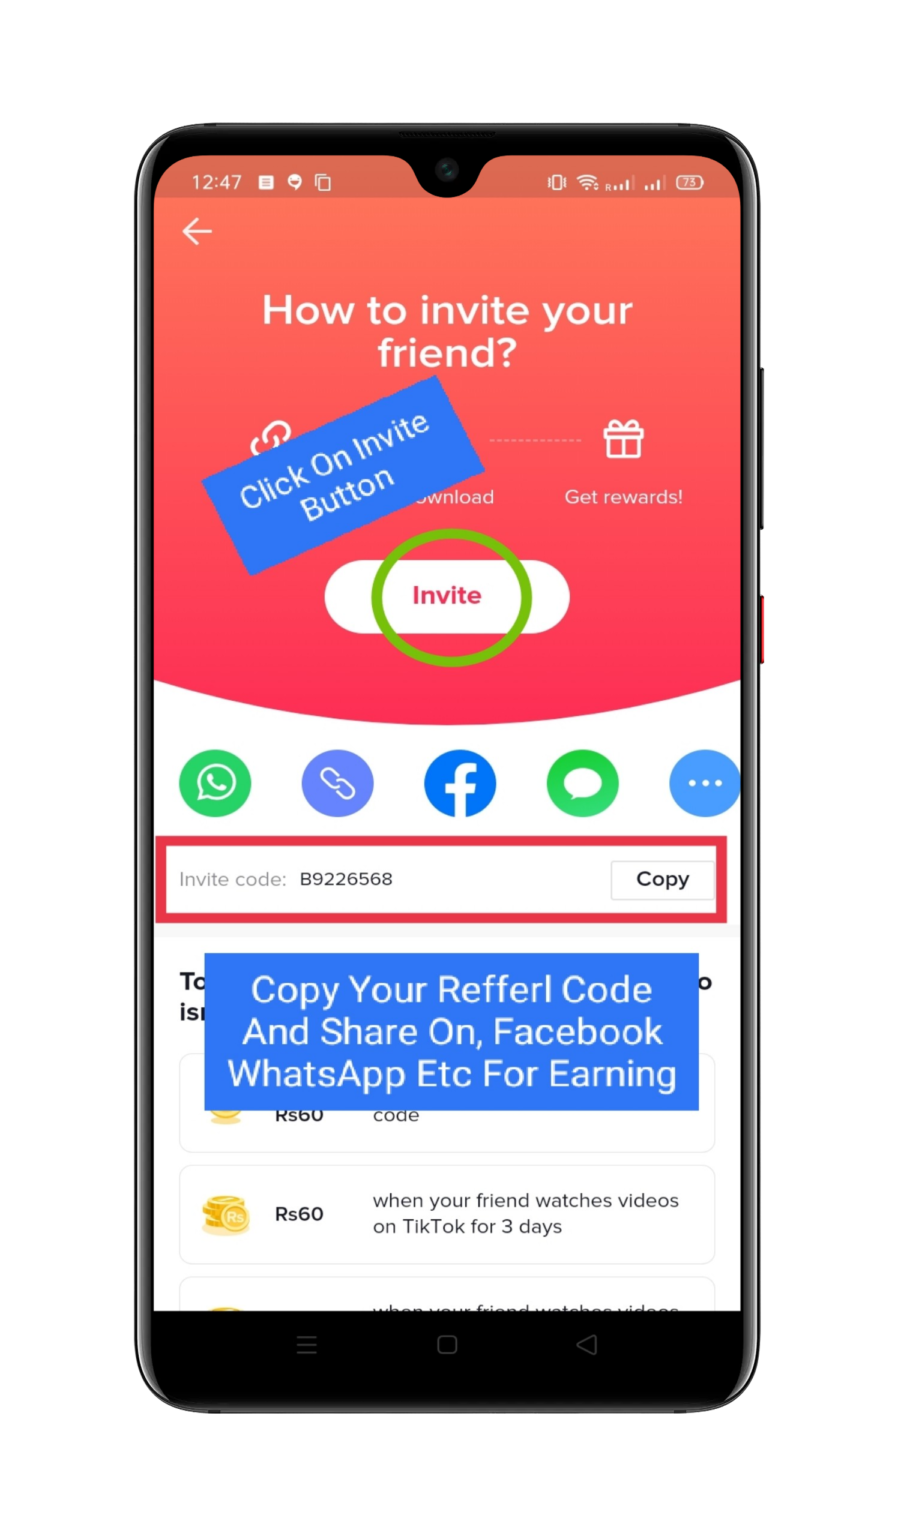 Tiktok App New Offer - Invite And Earn - Get 440 Per Invite - Earn